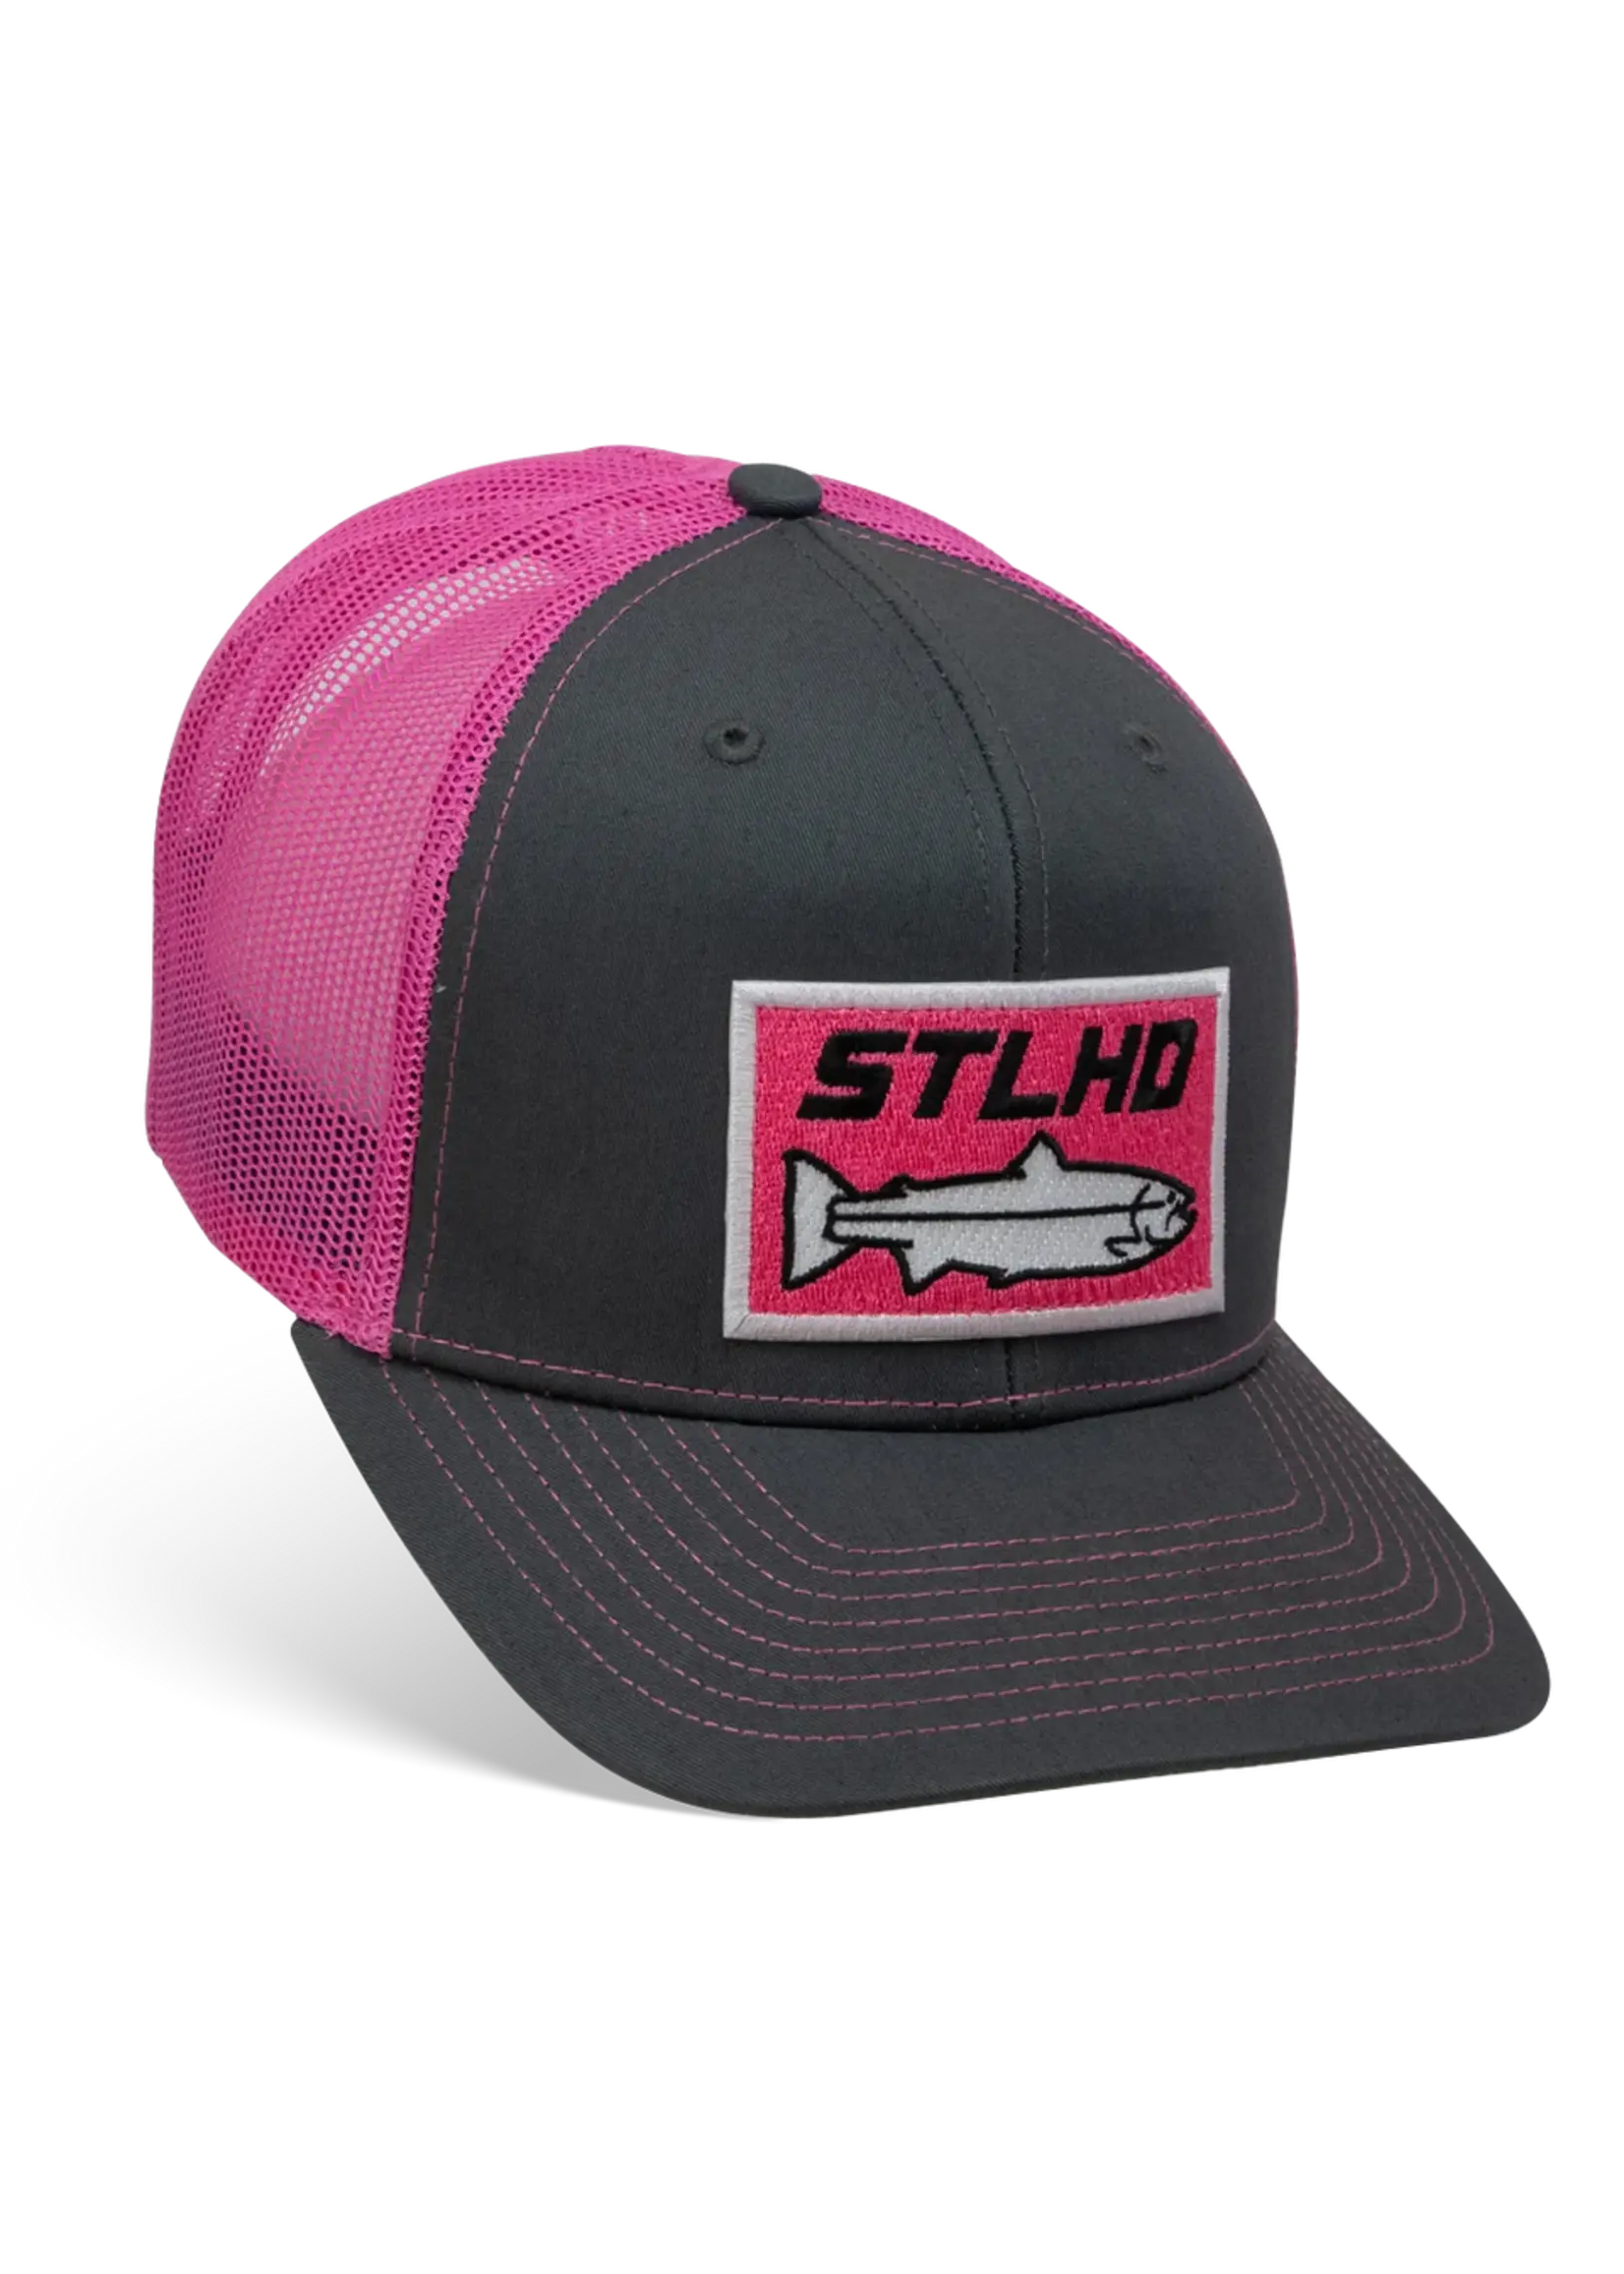 STLHD Gear STLHD Standard Pink & Charcoal Trucker Snapback Hat